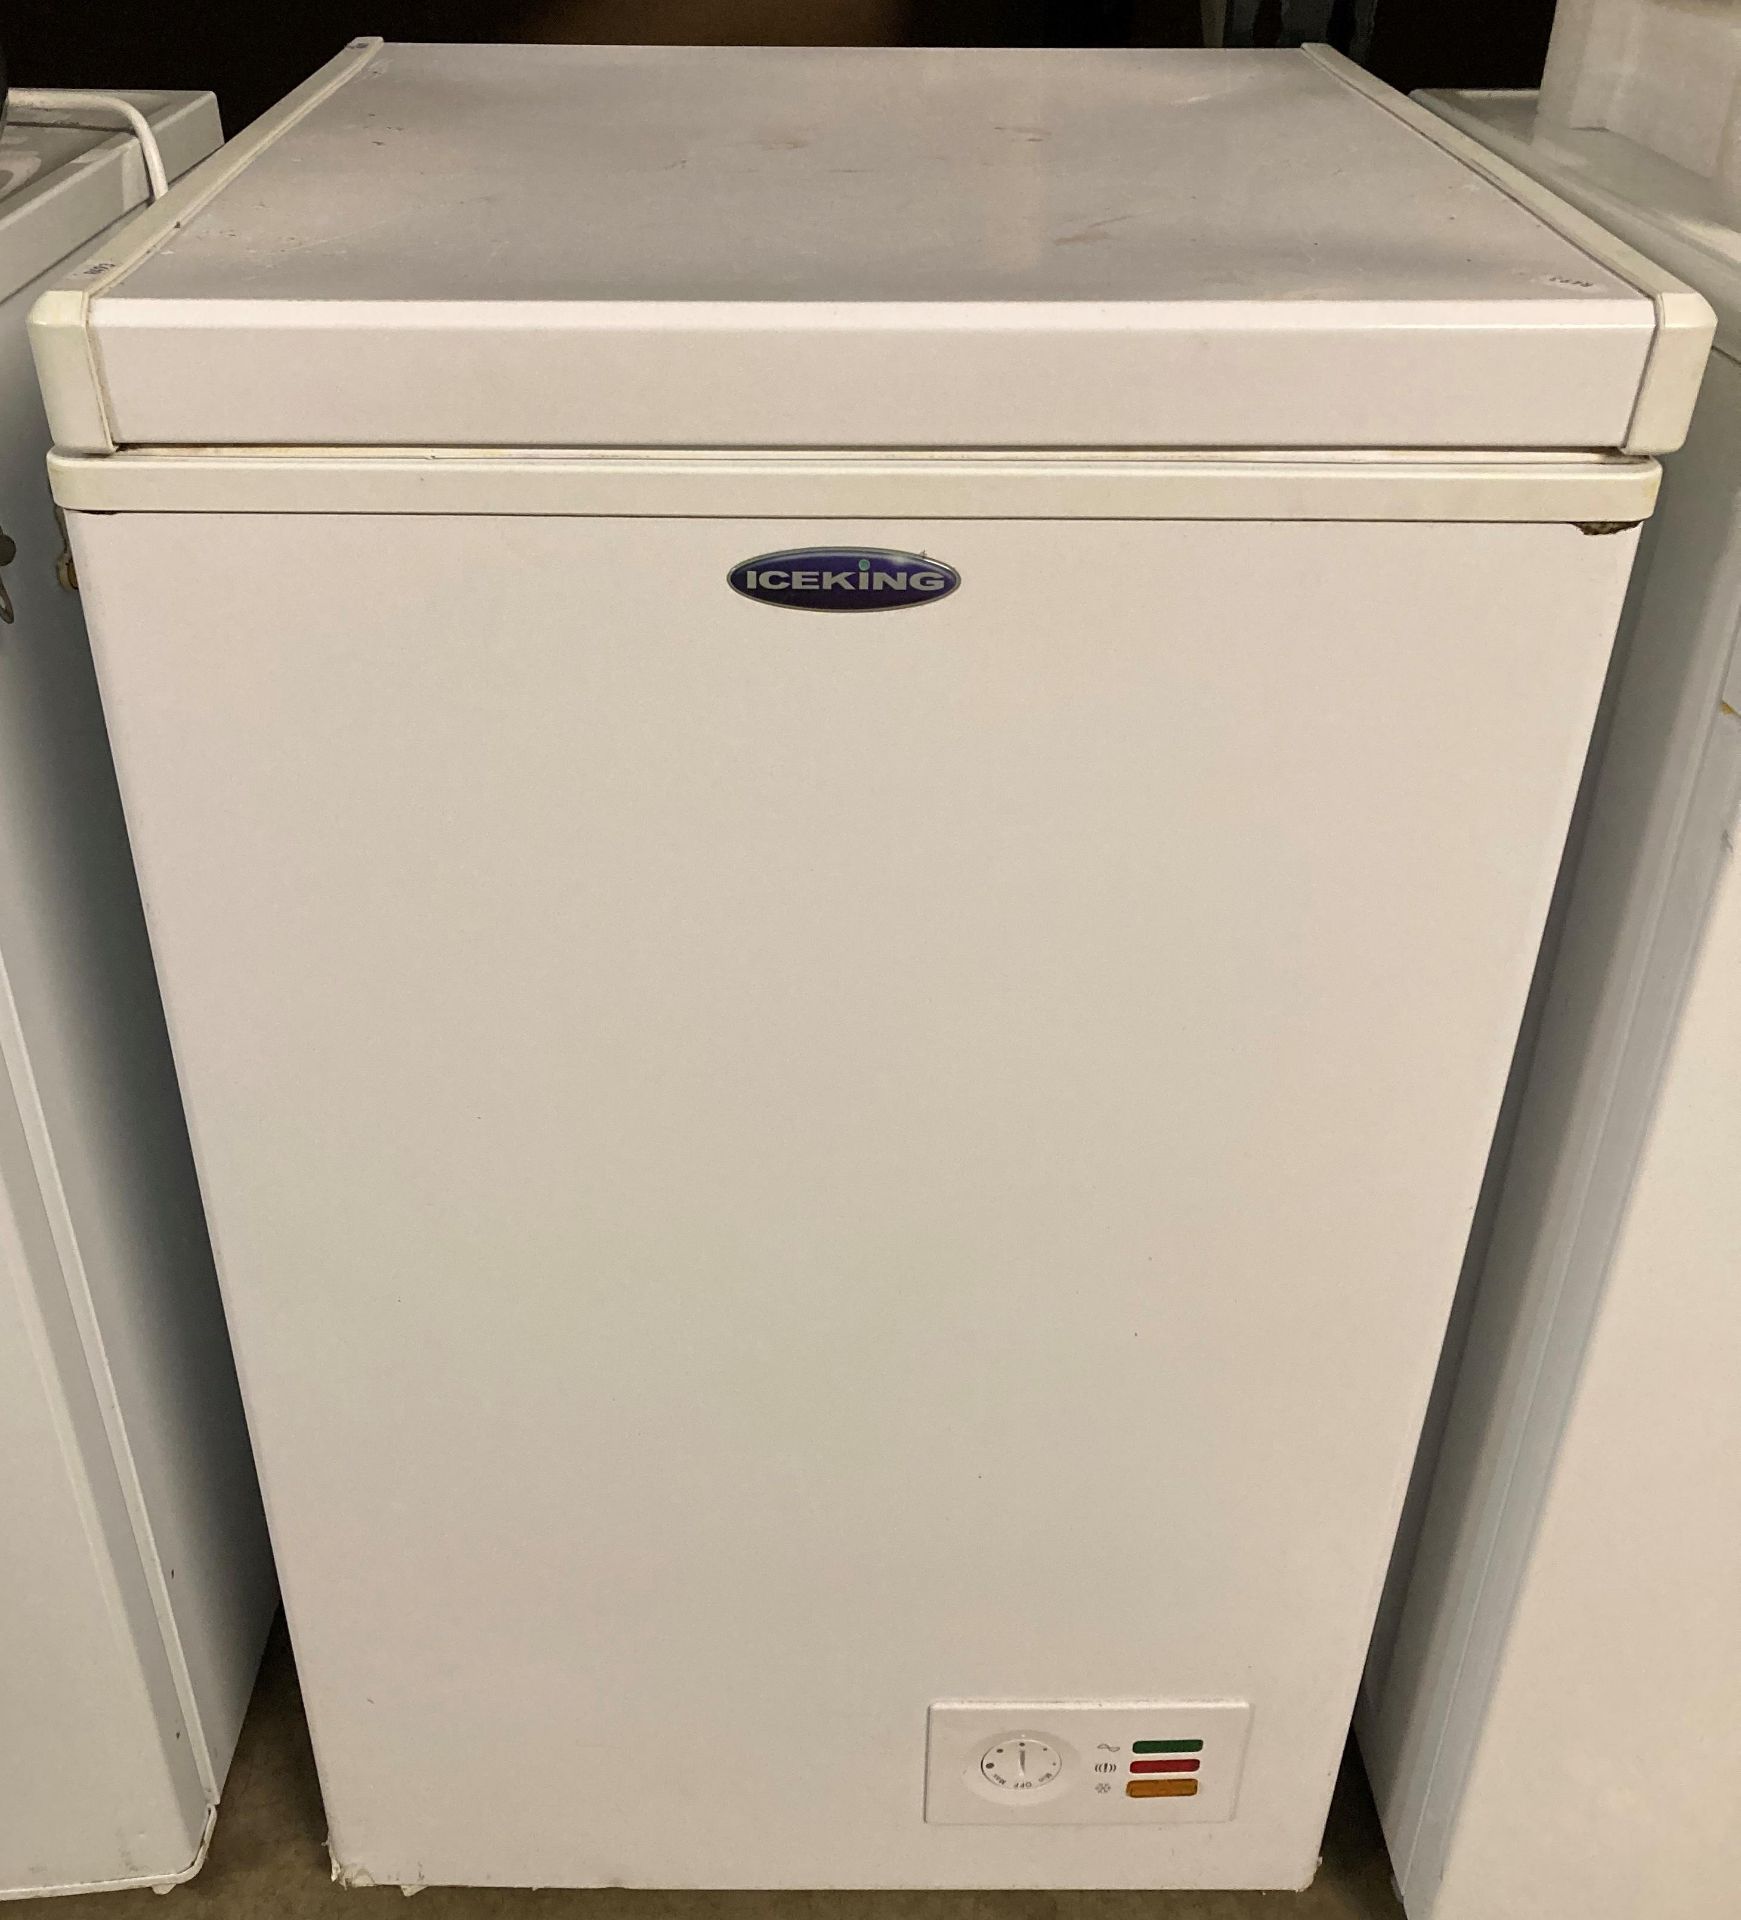 Iceking chest freezer modelL CFAP 100w 99L - 240v (saleroom location: PO)